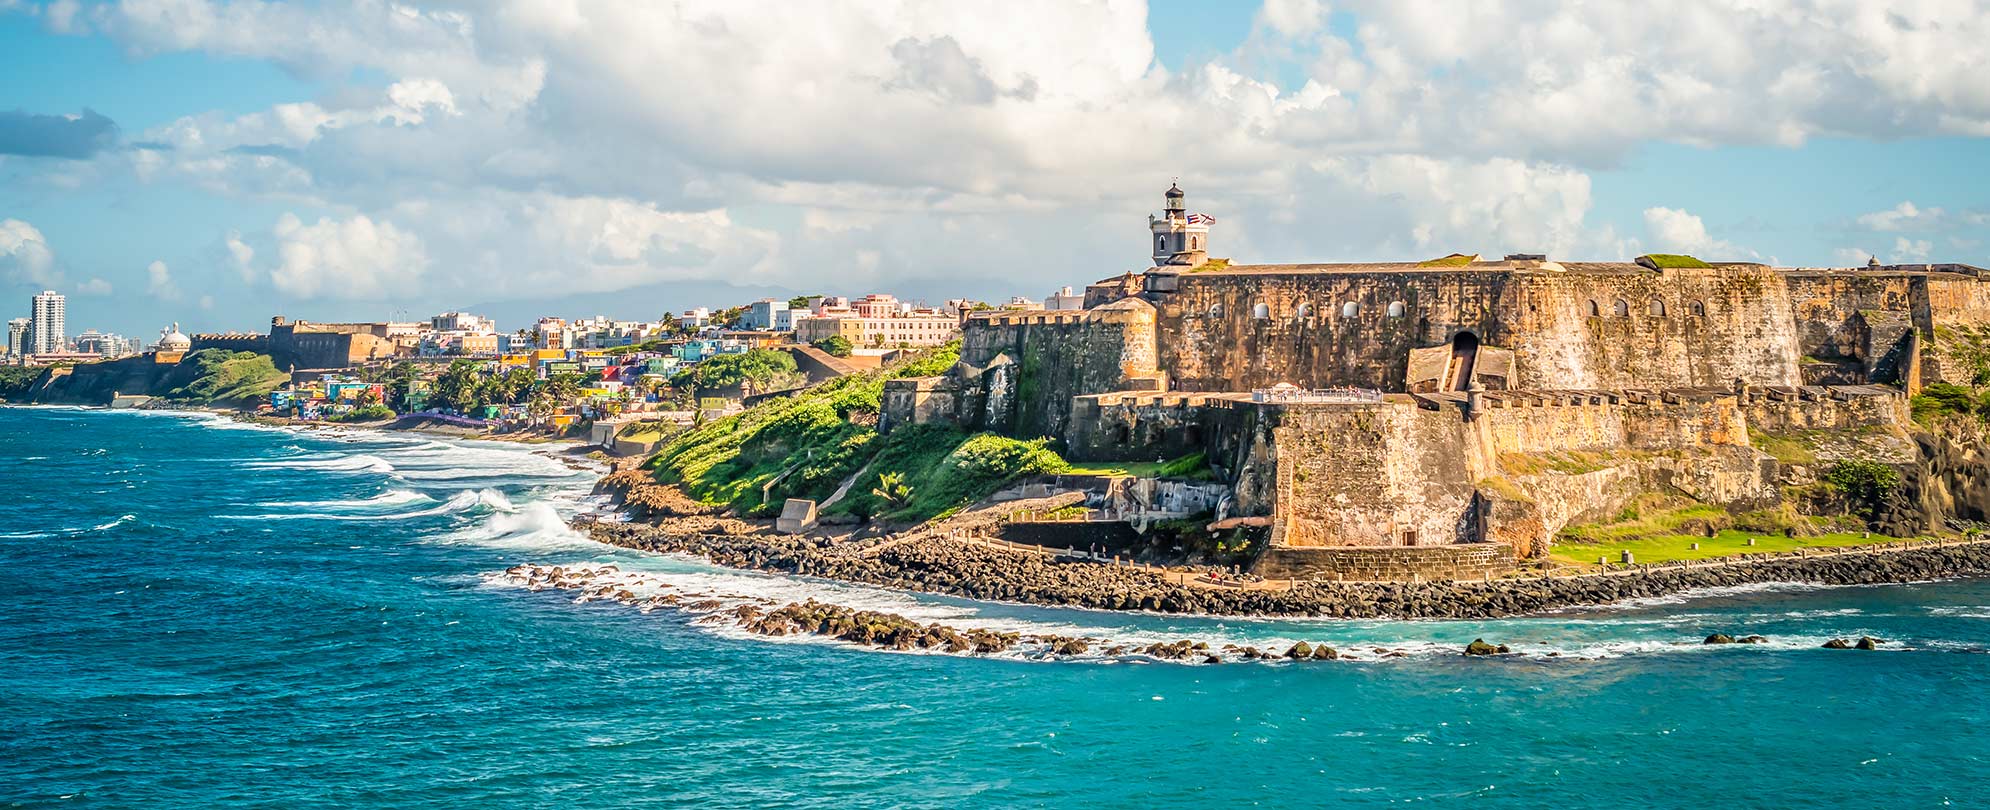 Shoreline by cliff beneath San Felipe Del Morro castle in Old San Juan, Puerto Rico. 